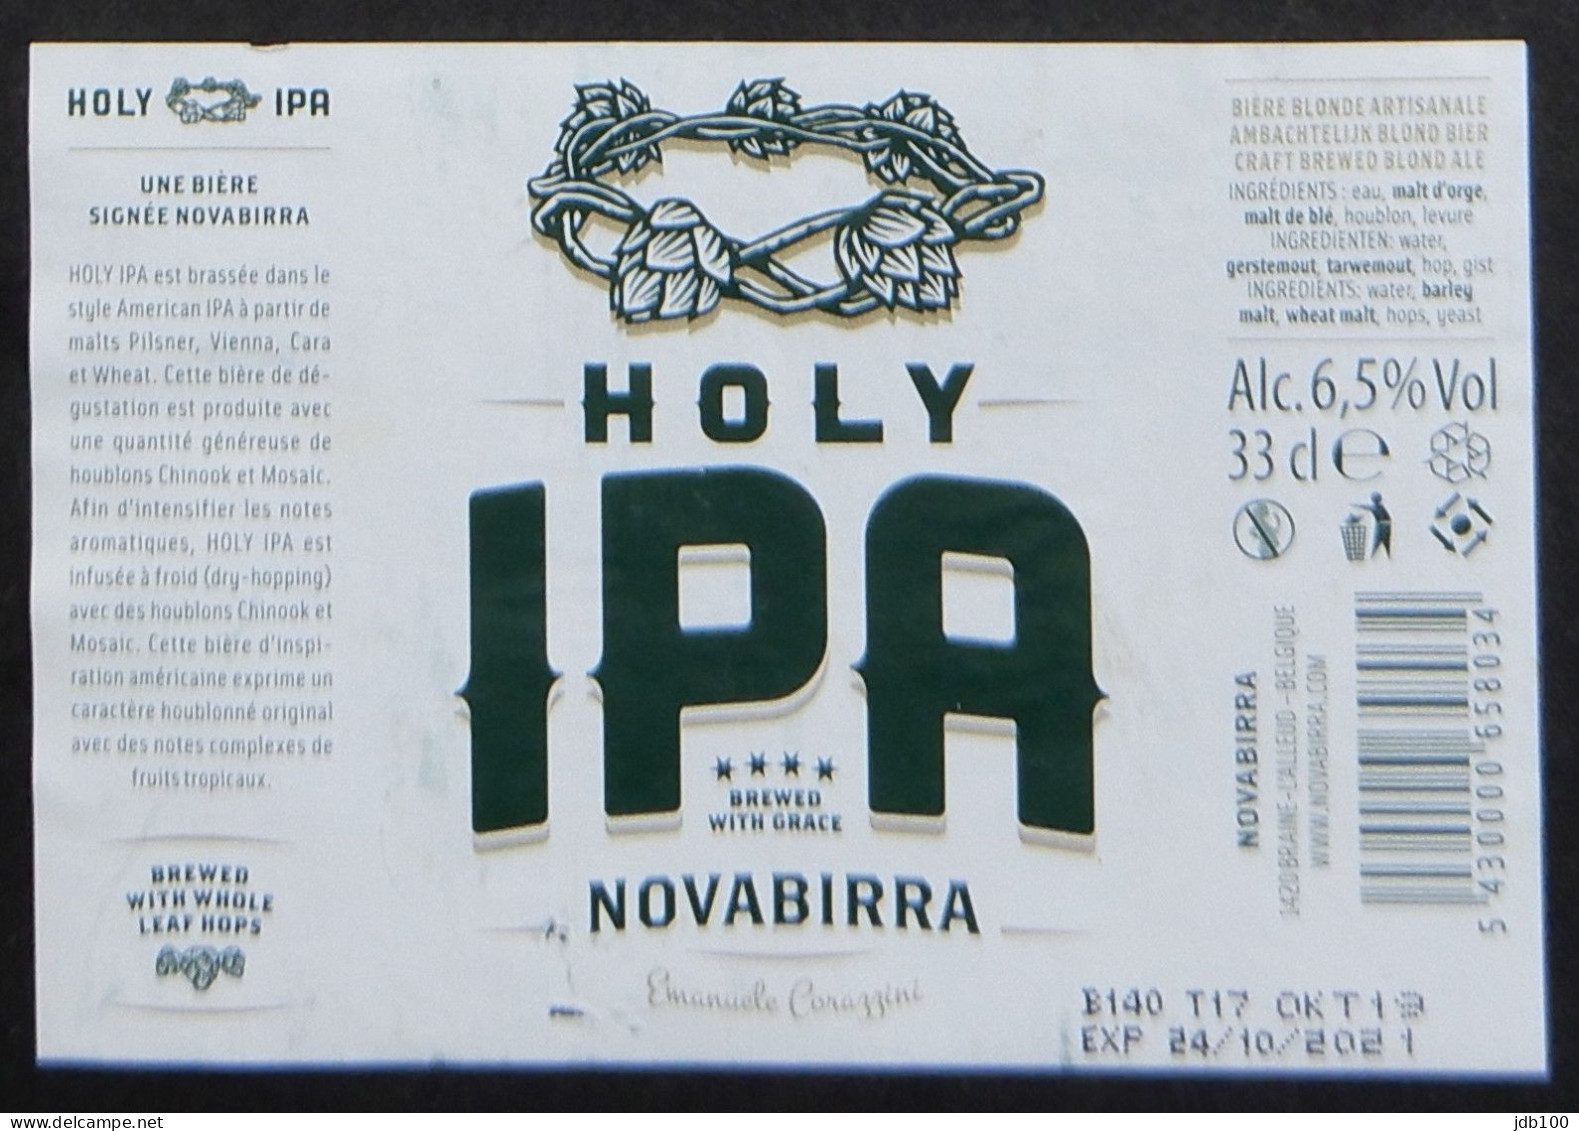 Bier Etiket (3p7), étiquette De Bière, Beer Label, Holy IPA Brouwerij Novabirra - Birra